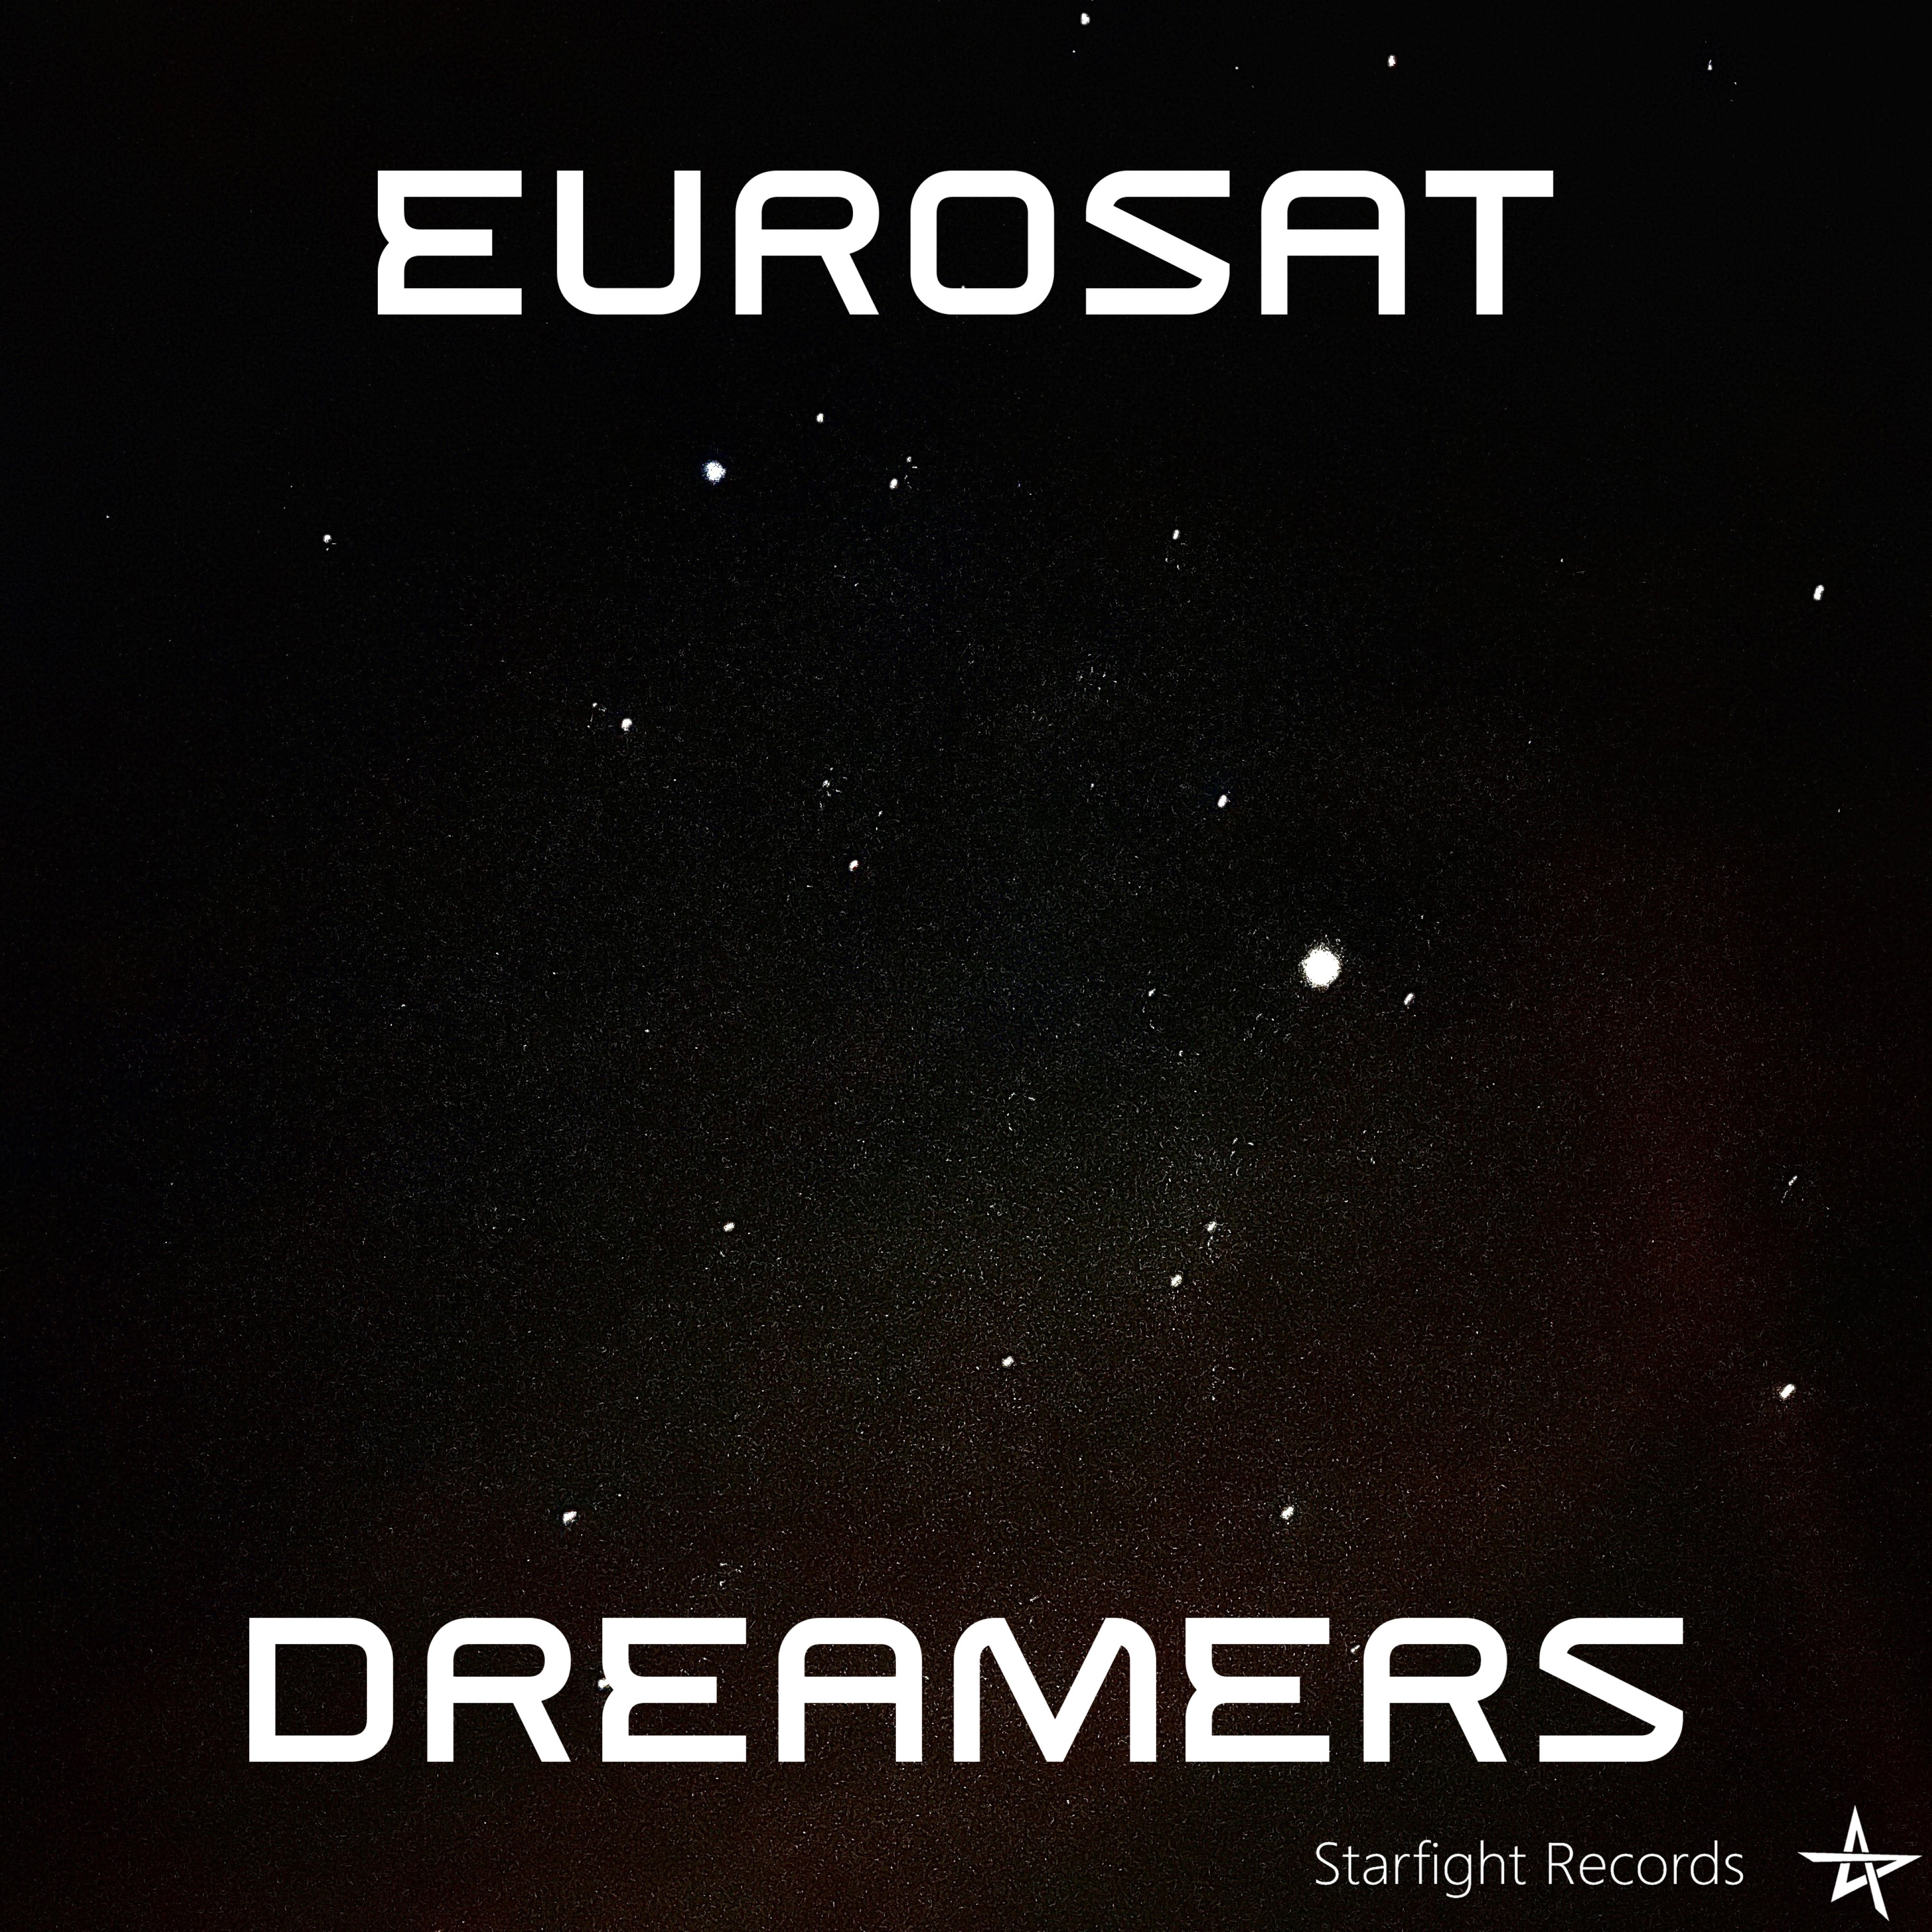 Dreamers by Eurosat